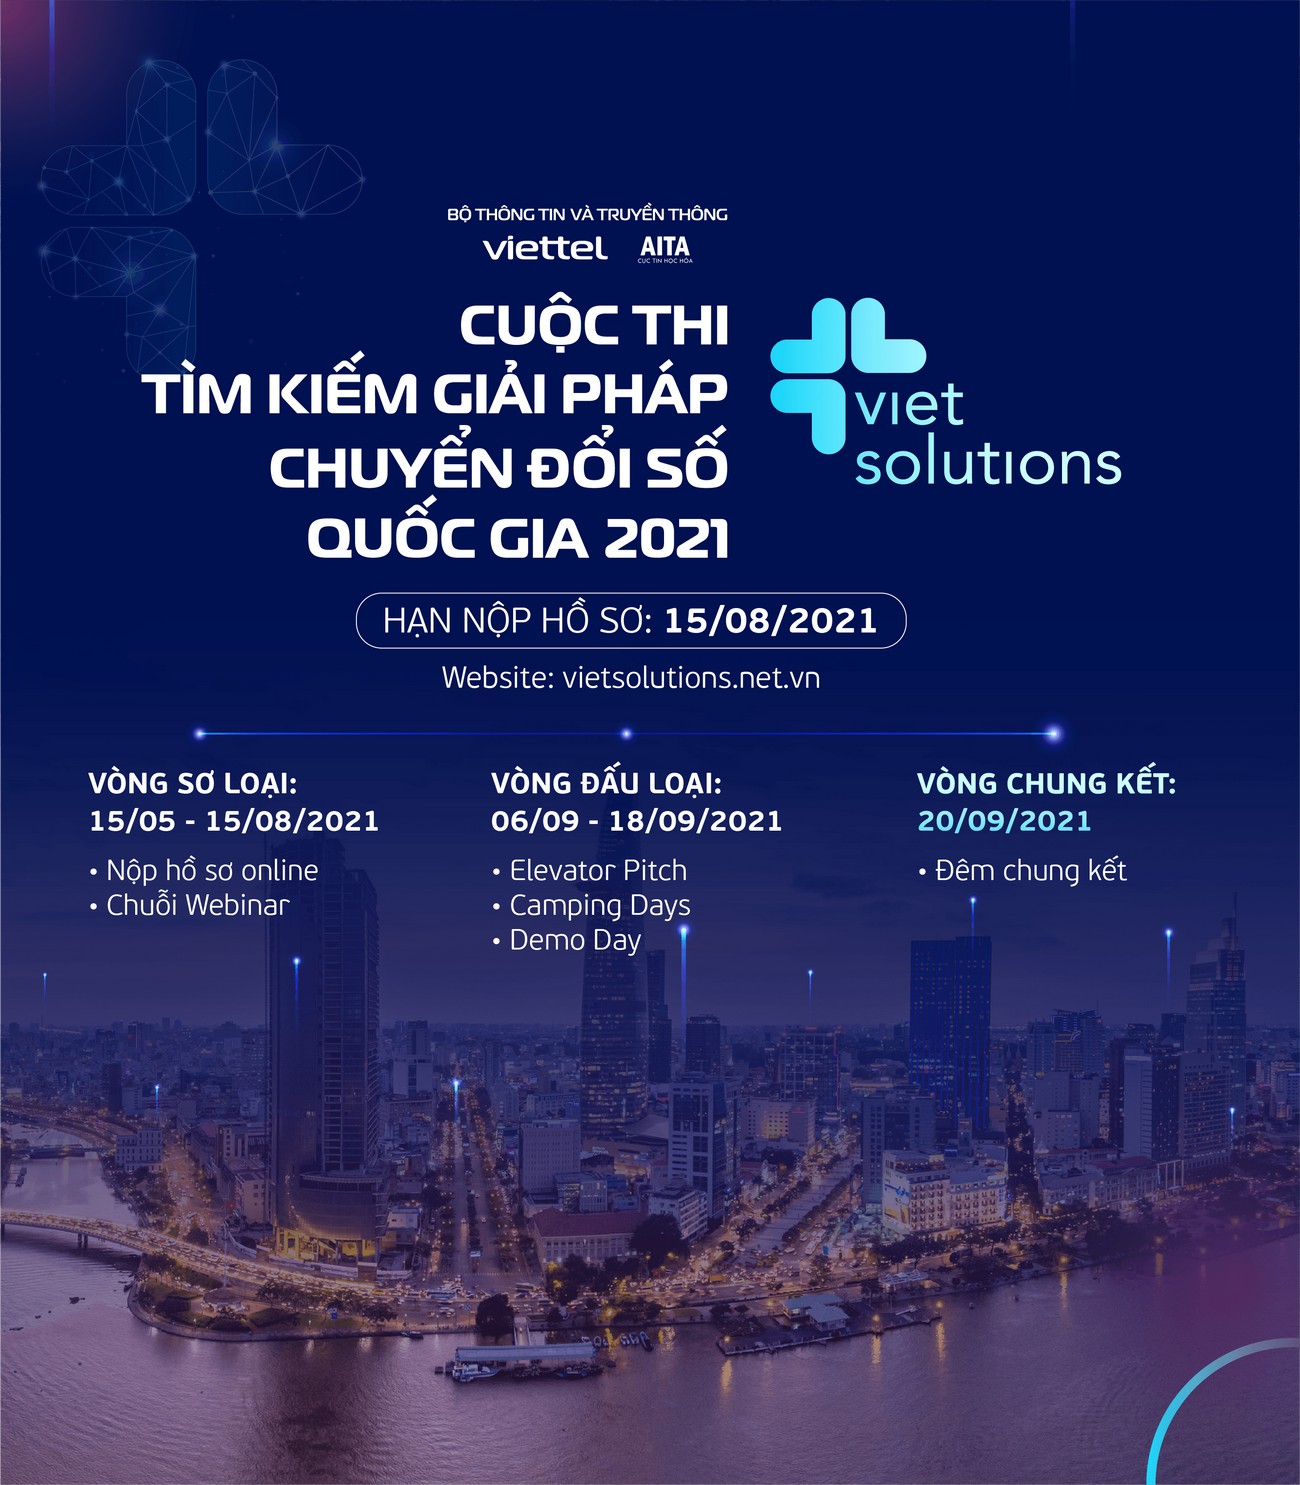 Viet Solutions 2021: "Cộng hưởng để kiến tạo xã hội số"